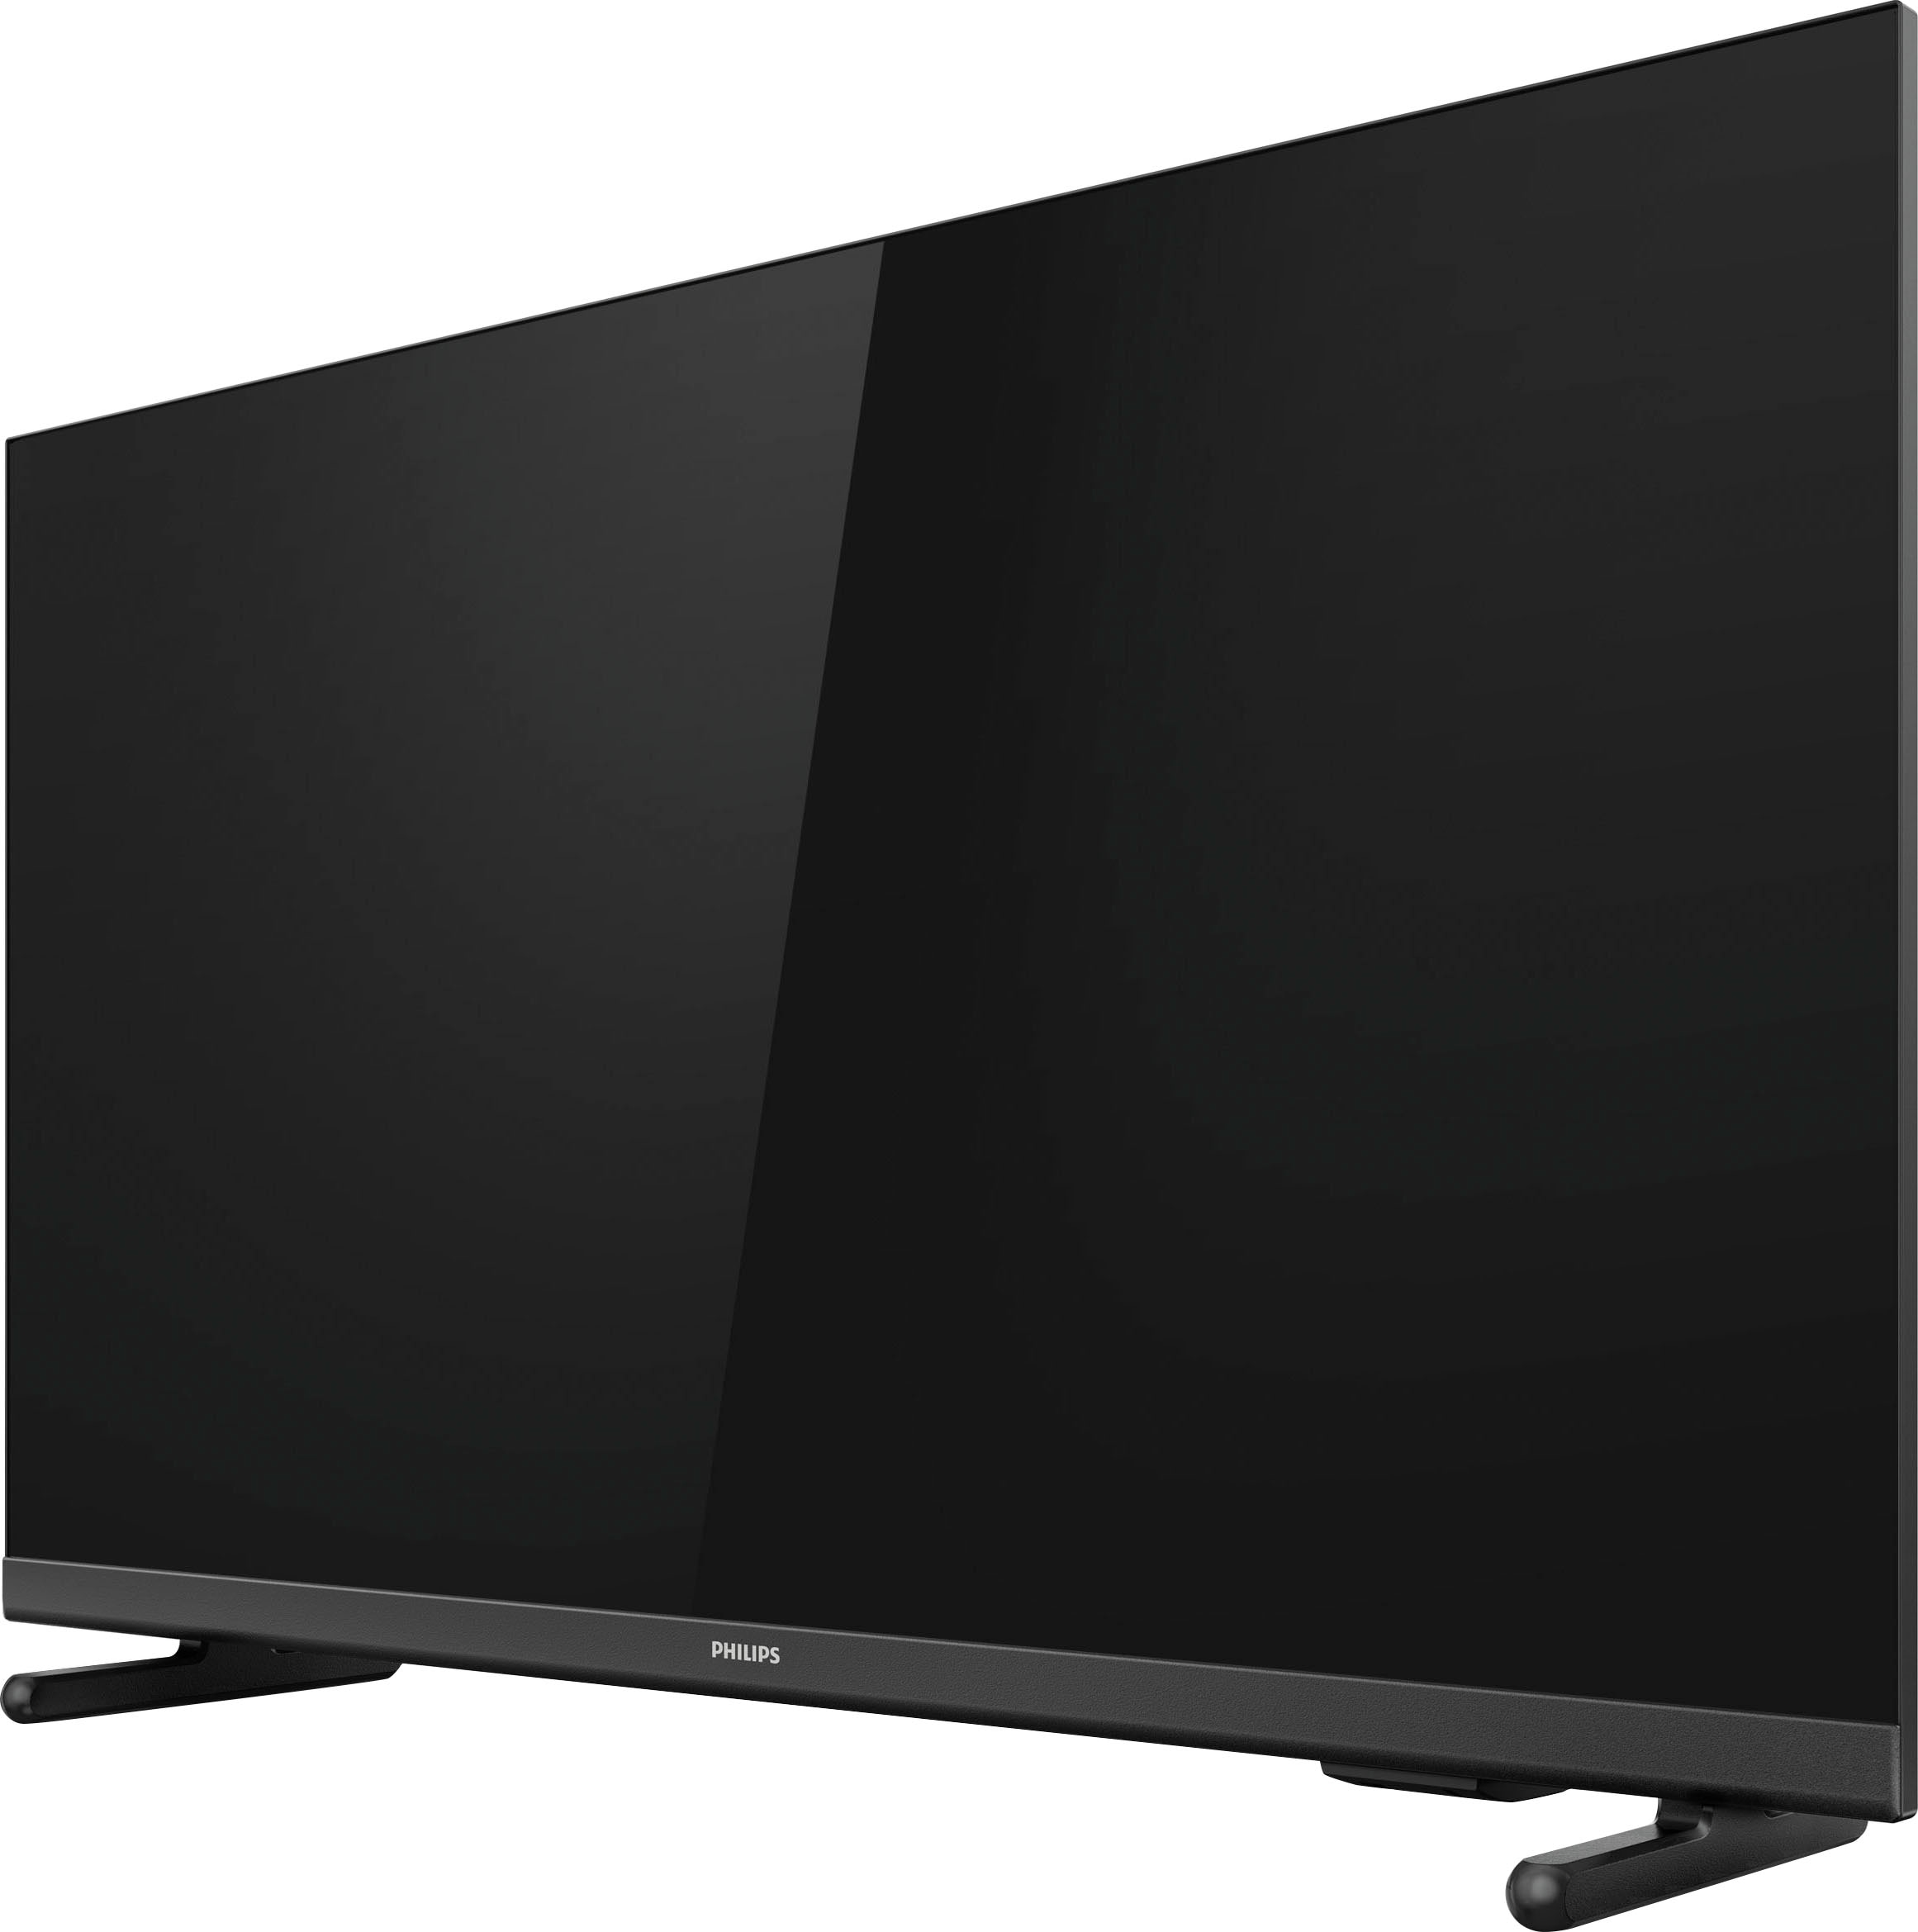 HD BAUR »43PFS5507/12«, LED-Fernseher | Philips Full cm/43 108 Zoll,